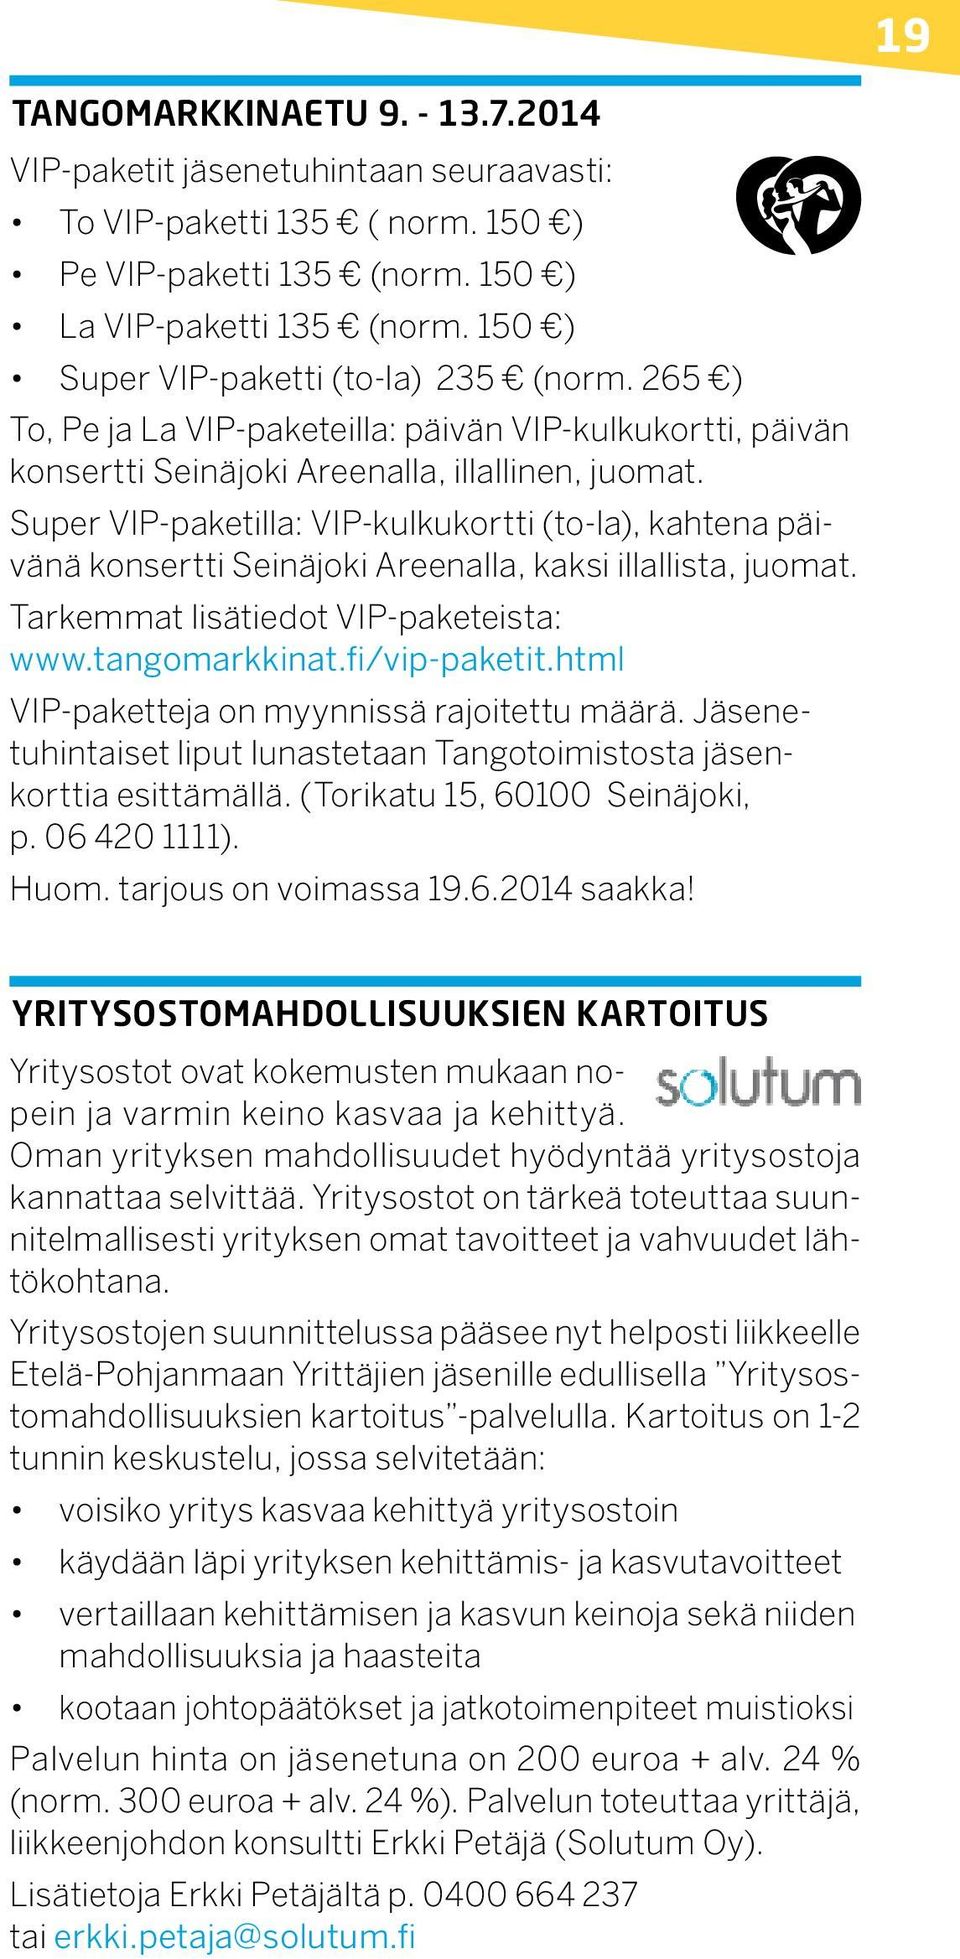 Super VIP-paketilla: VIP-kulkukortti (to-la), kahtena päivänä konsertti Seinäjoki Areenalla, kaksi illallista, juomat. Tarkemmat lisätiedot VIP-paketeista: www.tangomarkkinat.fi/vip-paketit.